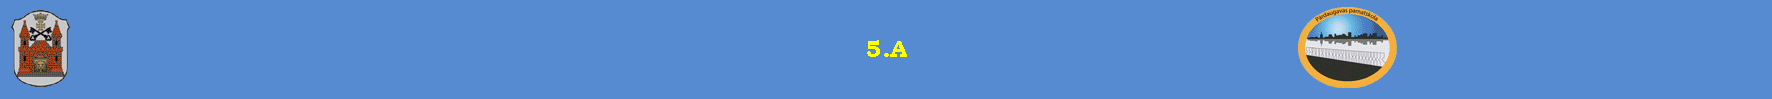 5.A